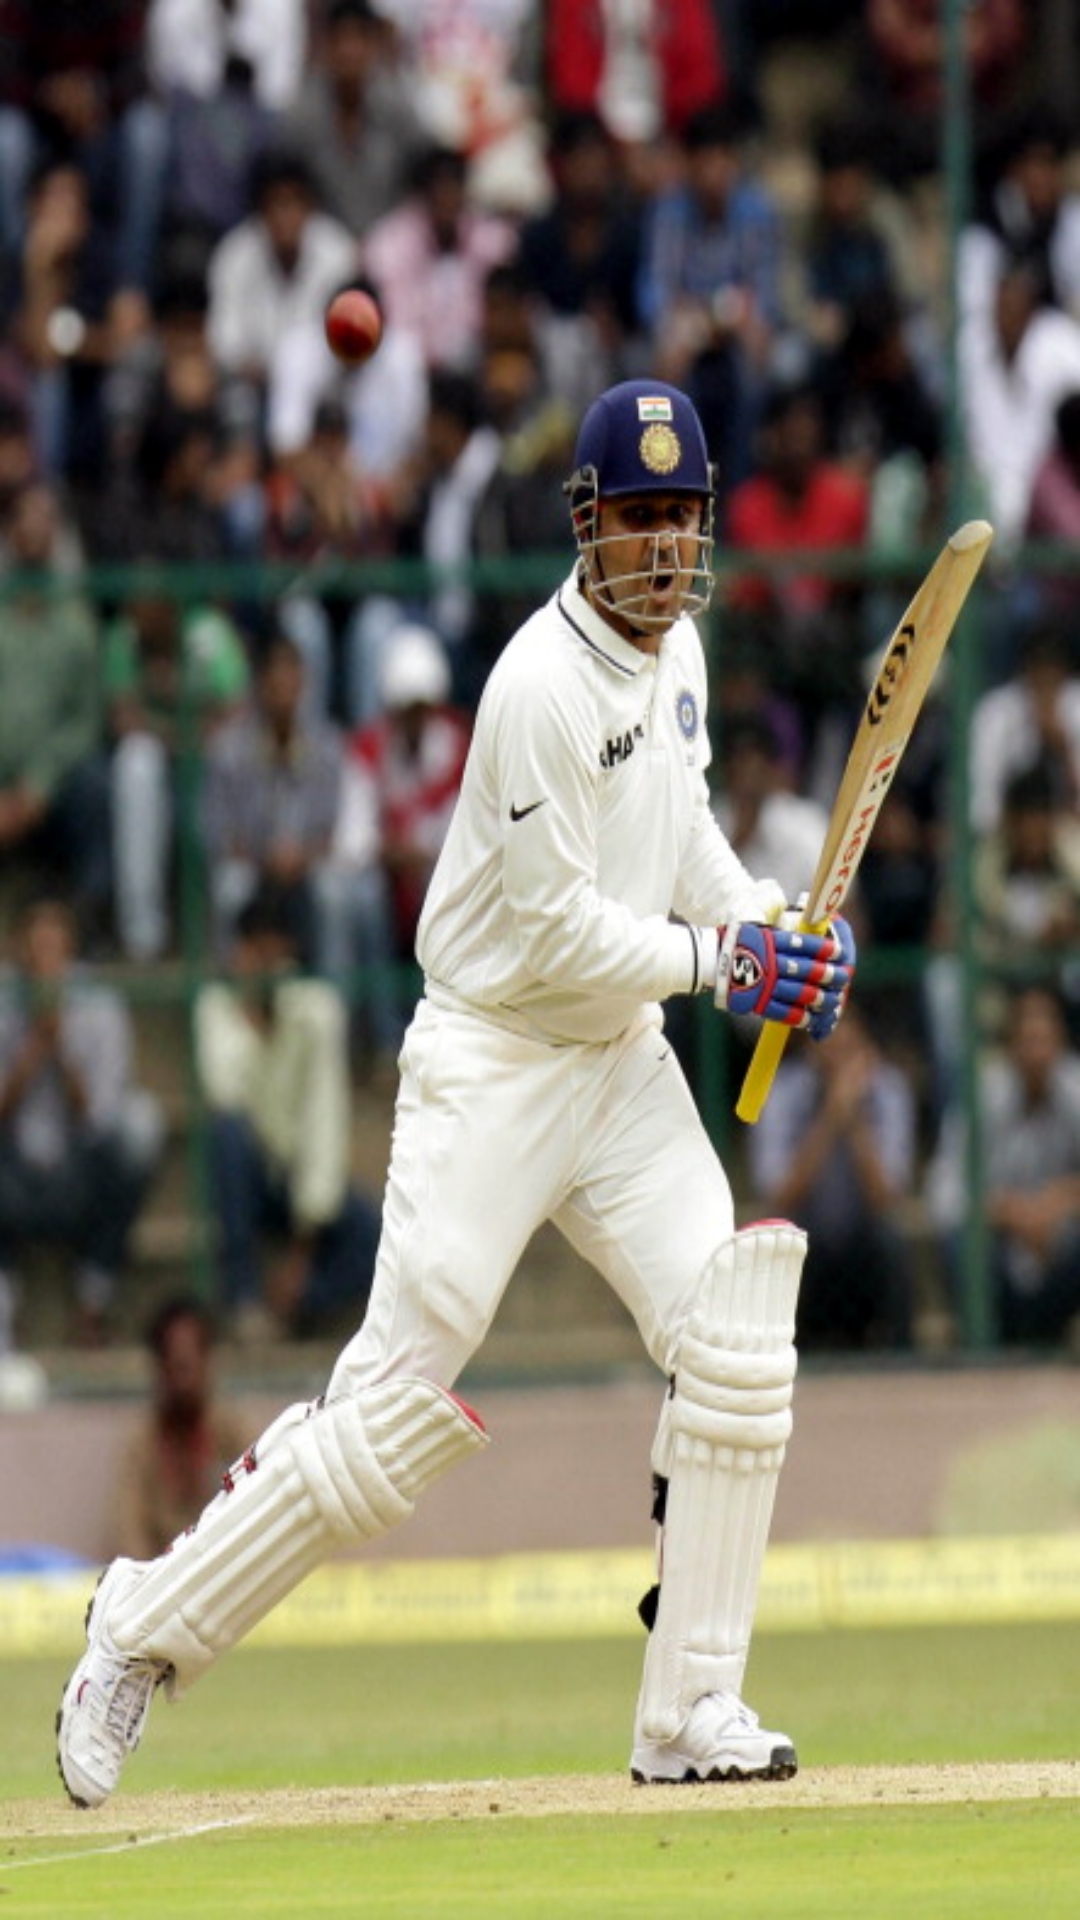 टेस्ट क्रिकेट में एक ओवर में सबसे ज्यादा रन बनाने वाले टॉप 5 बल्लेबाजों की लिस्ट